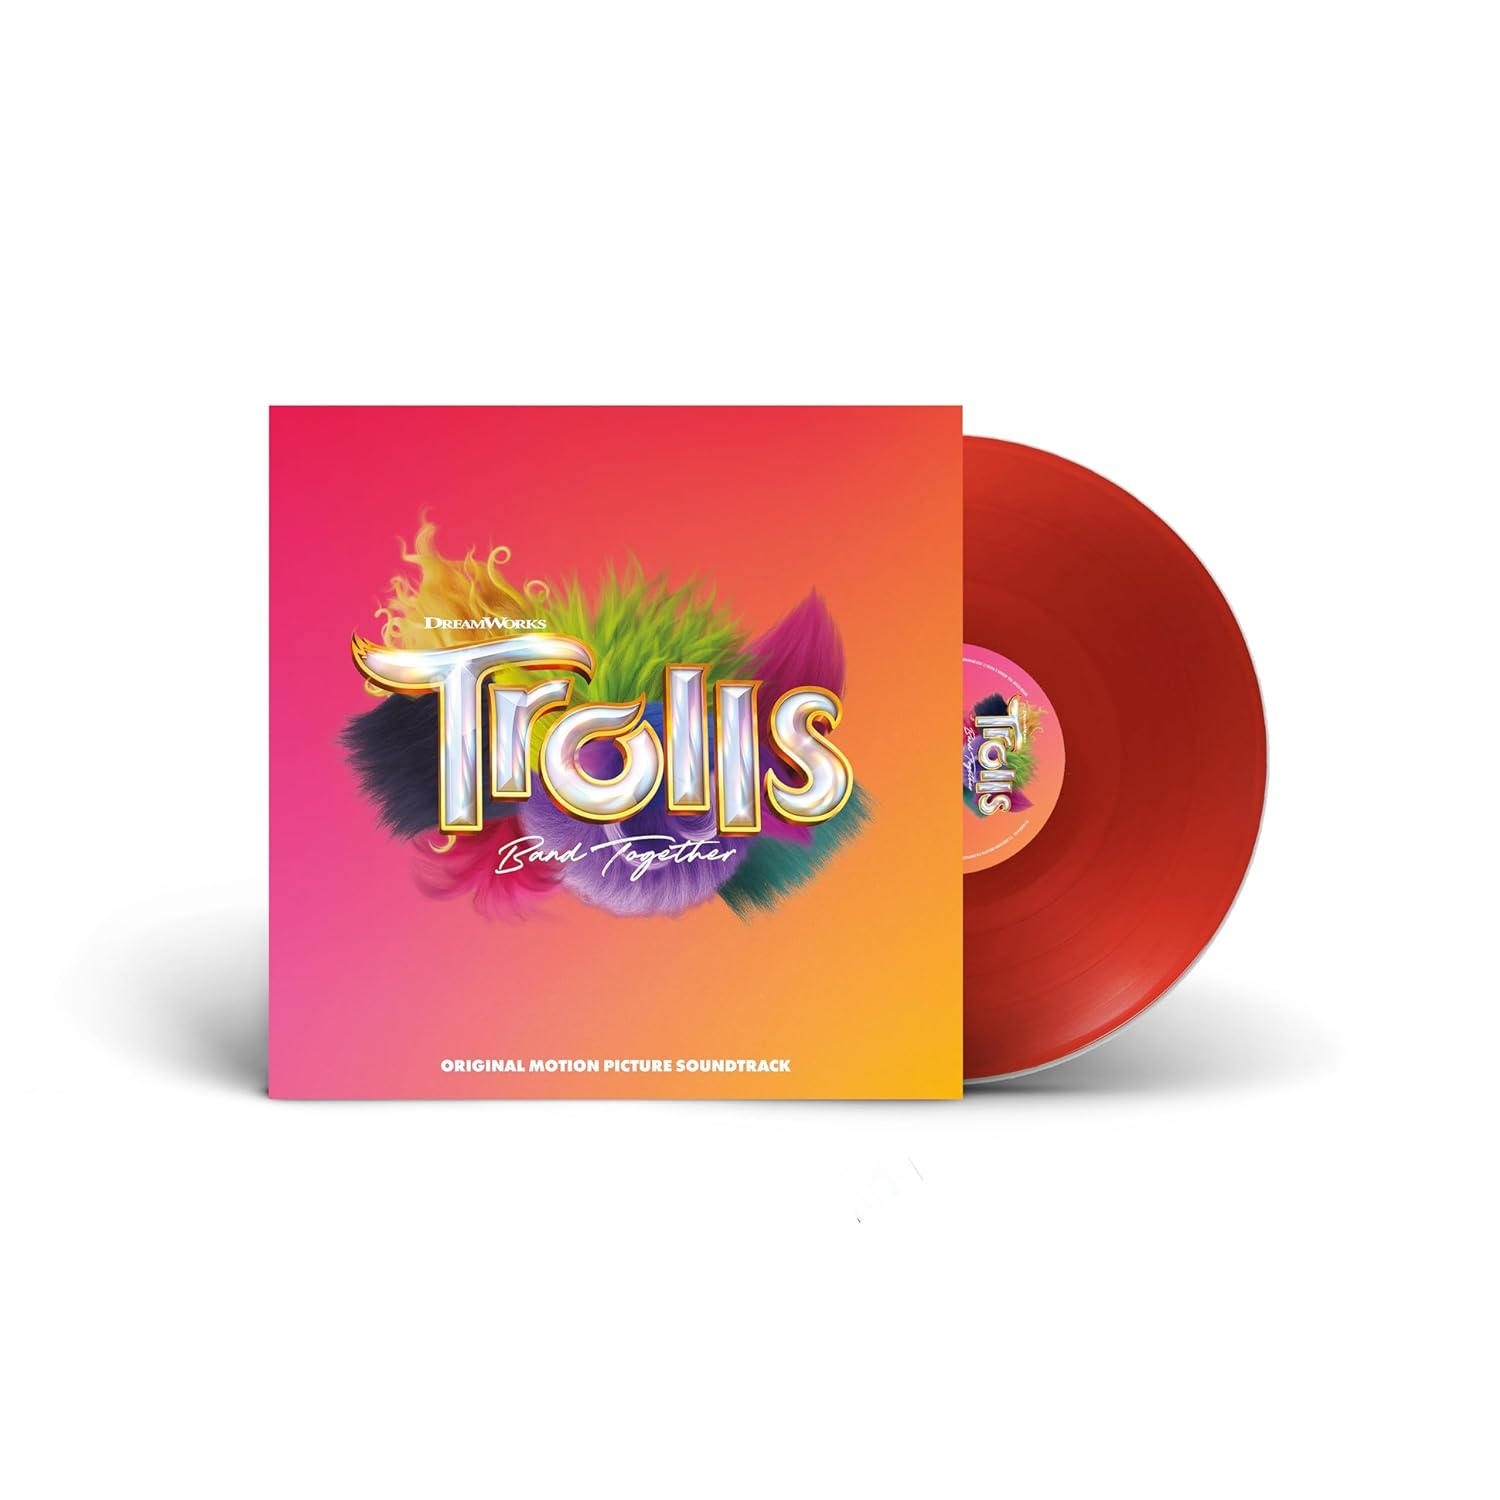 Trolls Band Together (Original Motion Picture Soundtrack) (Red Vinyl LP)